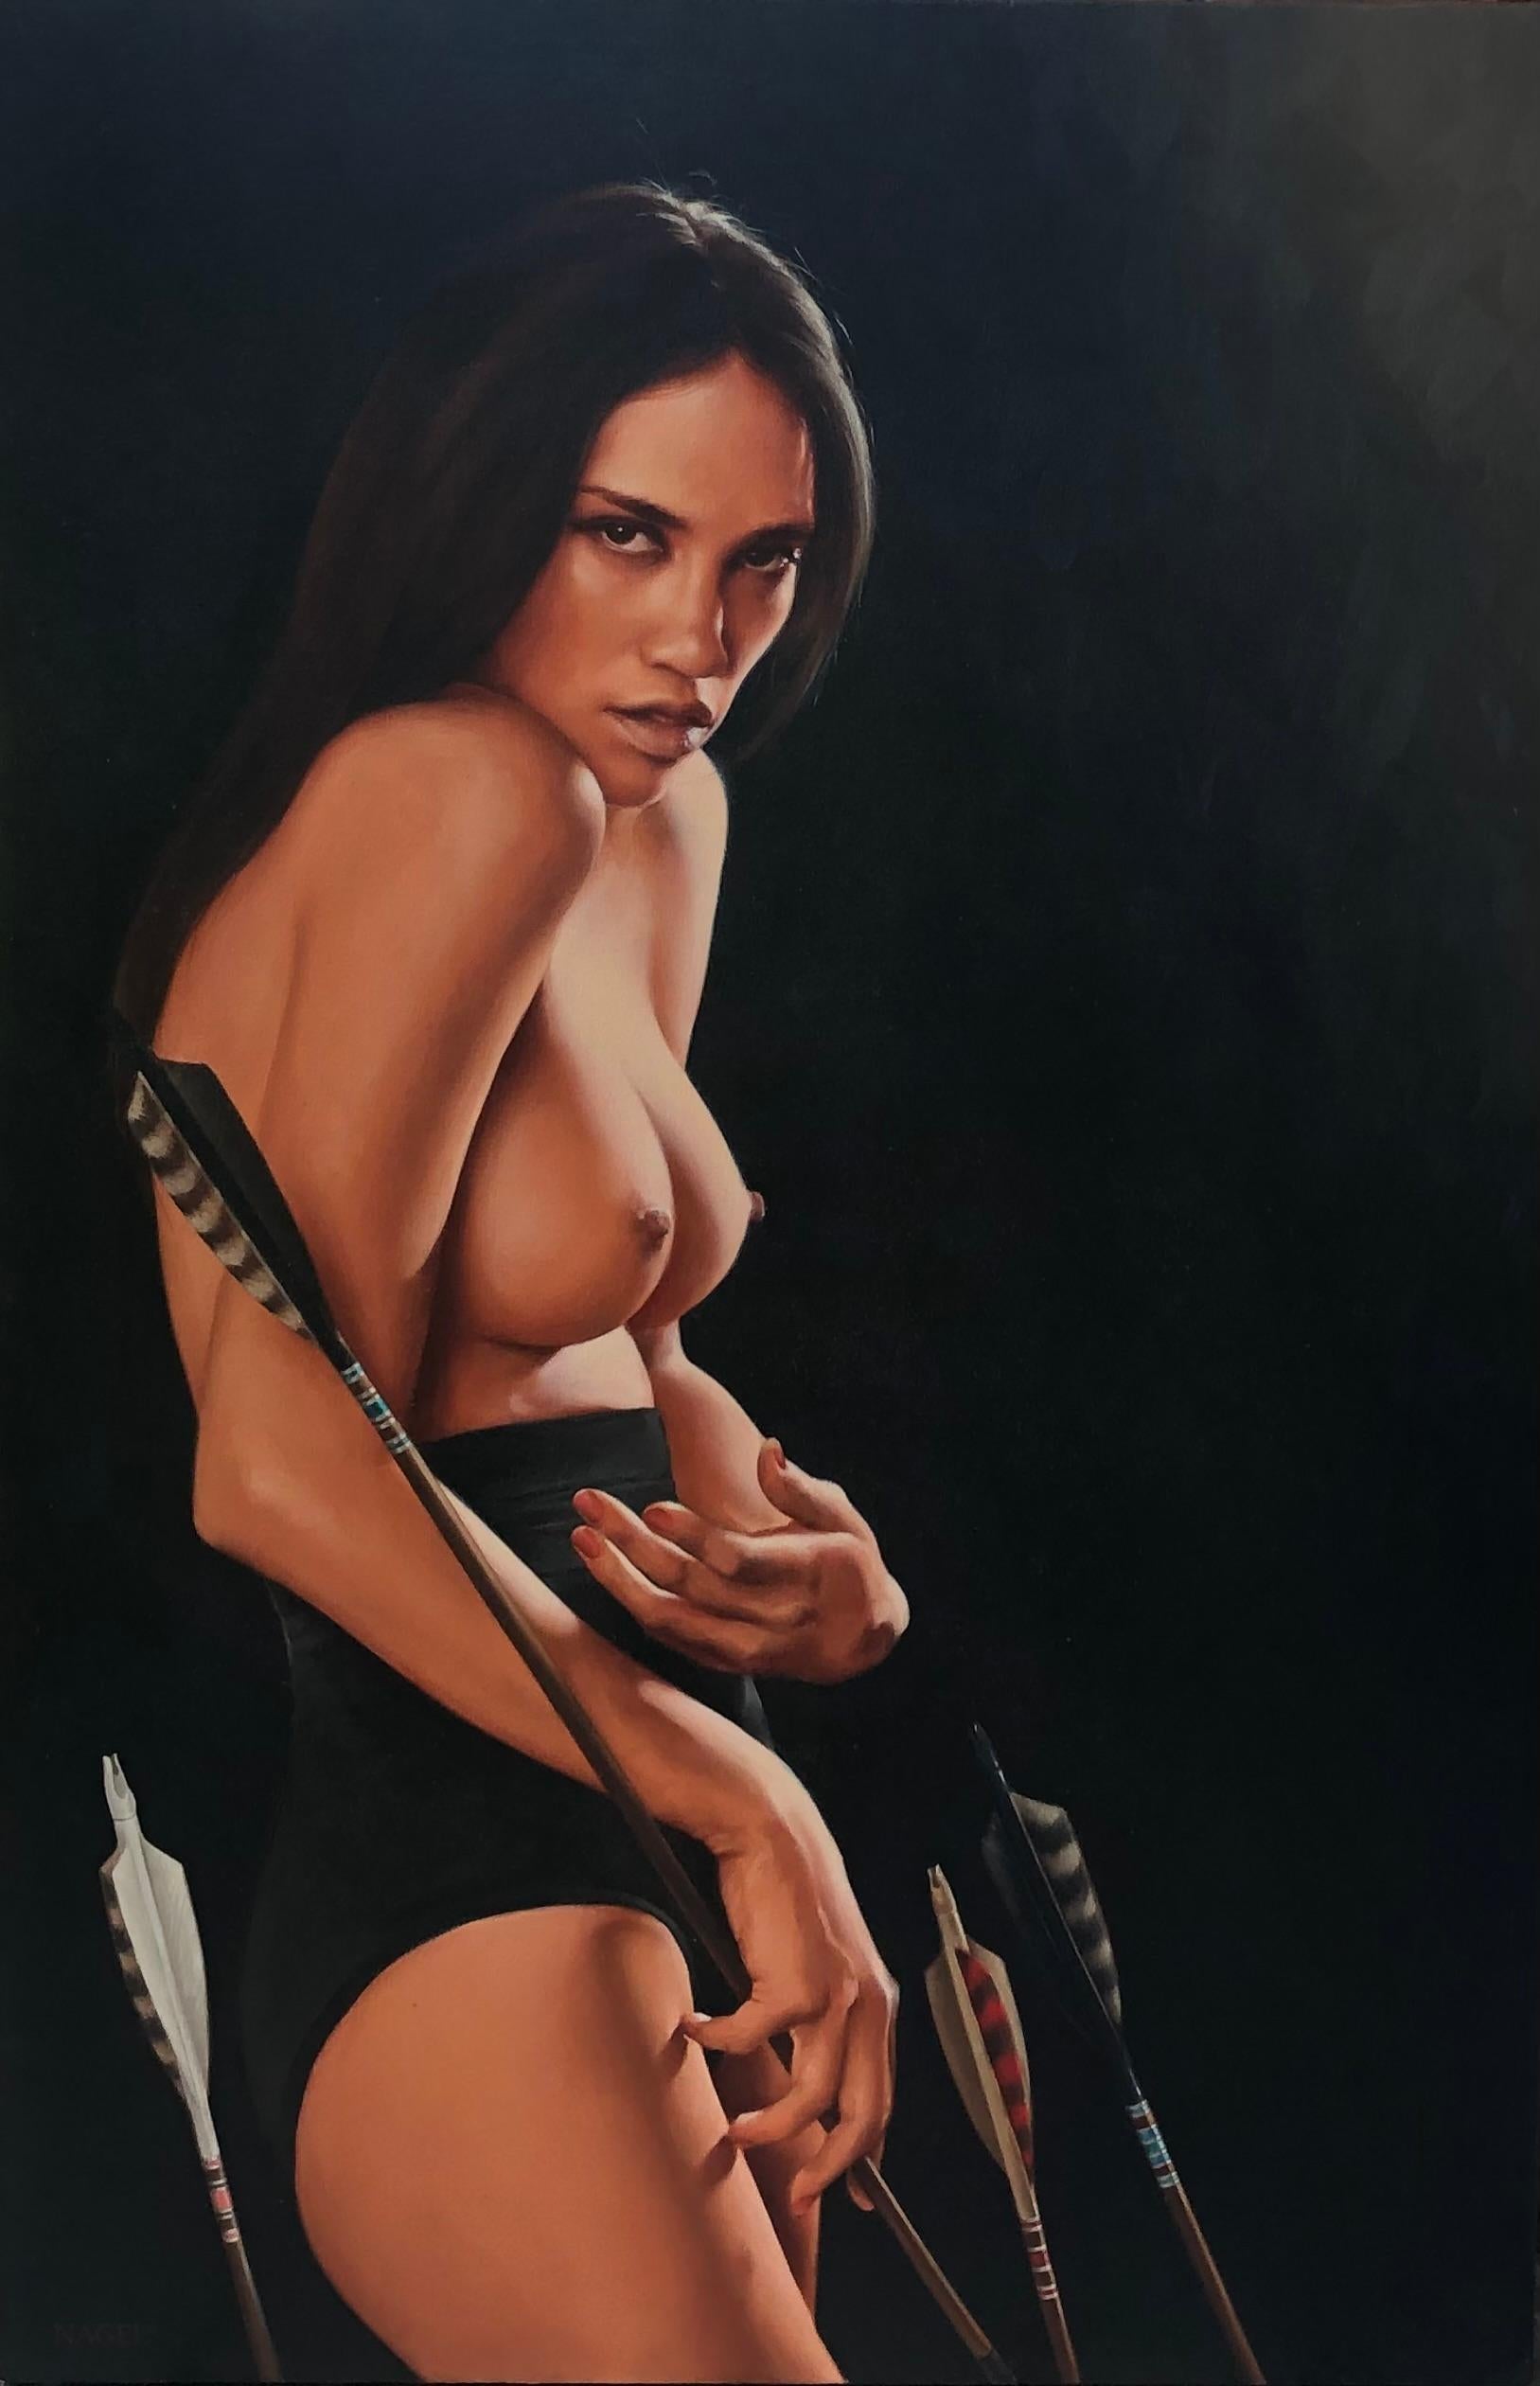 Aaron Nagel Nude Painting – Halbnacktes figuratives Porträtgemälde einer Frau mit Pfeilen